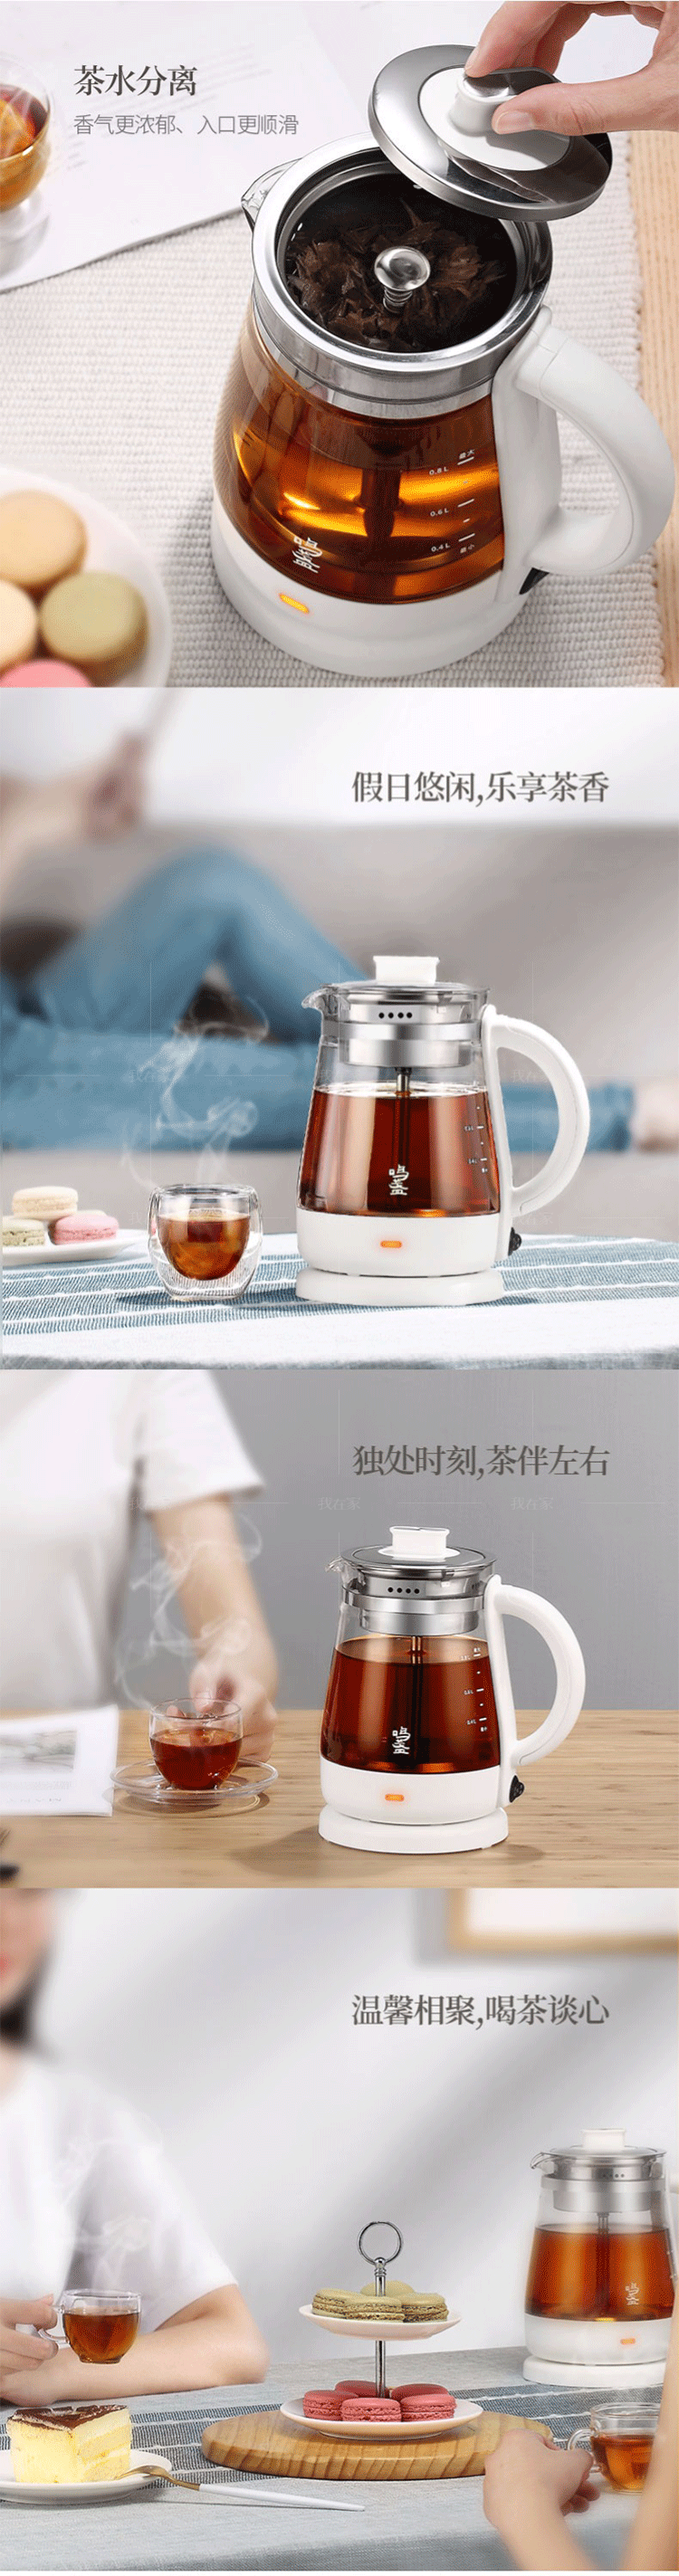 鸣盏系列鸣盏喷淋式煮茶器养生壶的详细介绍